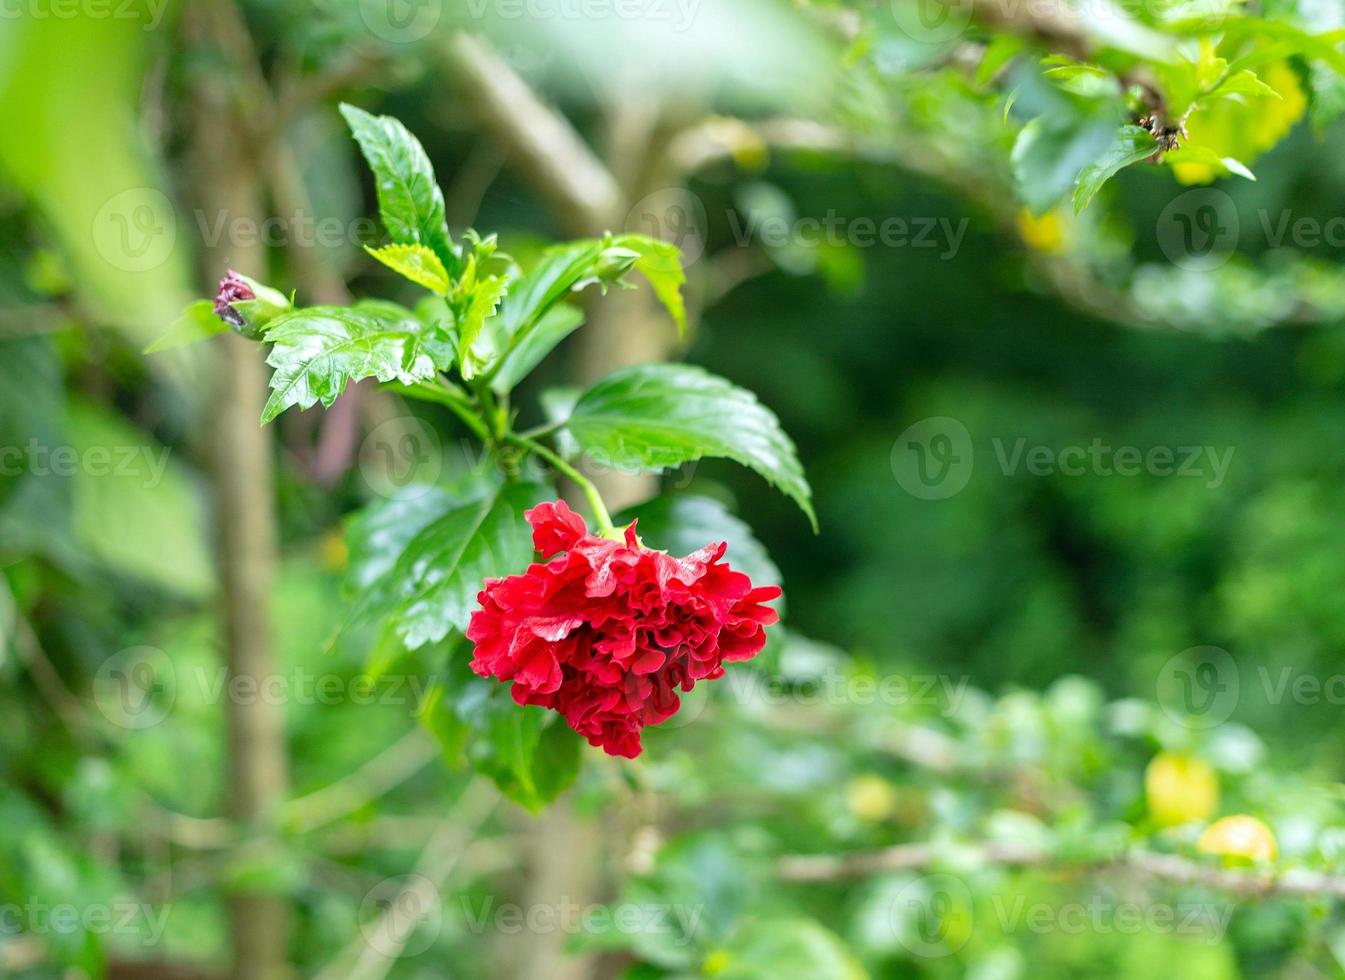 híbrido de hibisco rojo, una flor de zapato es un hermoso fondo de hoja verde flor floreciente. la primavera crece flores rosas chinas rojas y la naturaleza cobra vida foto